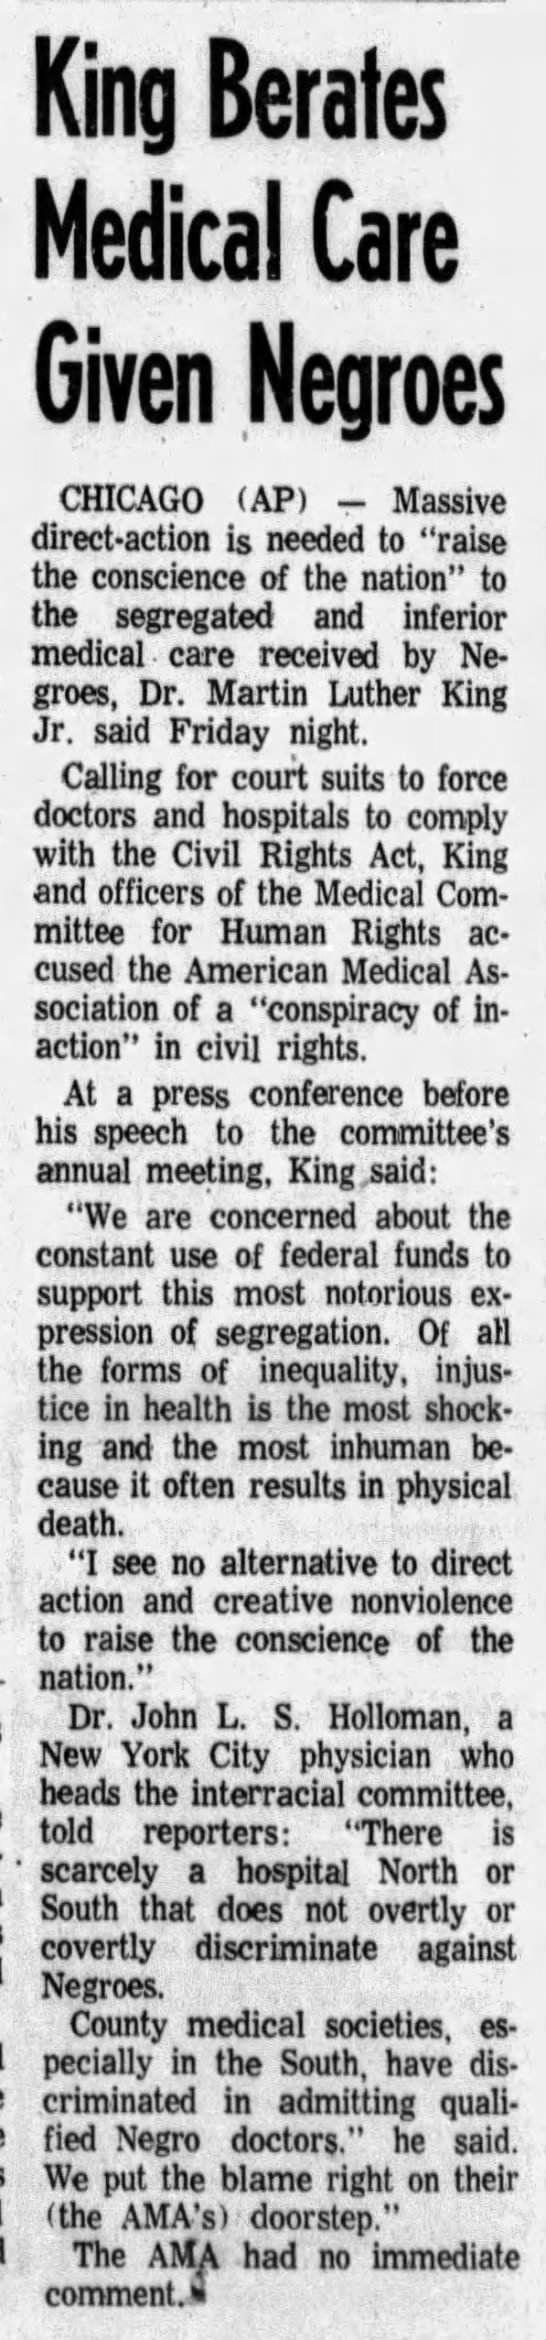 Oshkosh Daily Northwestern, 3/26/66 - 